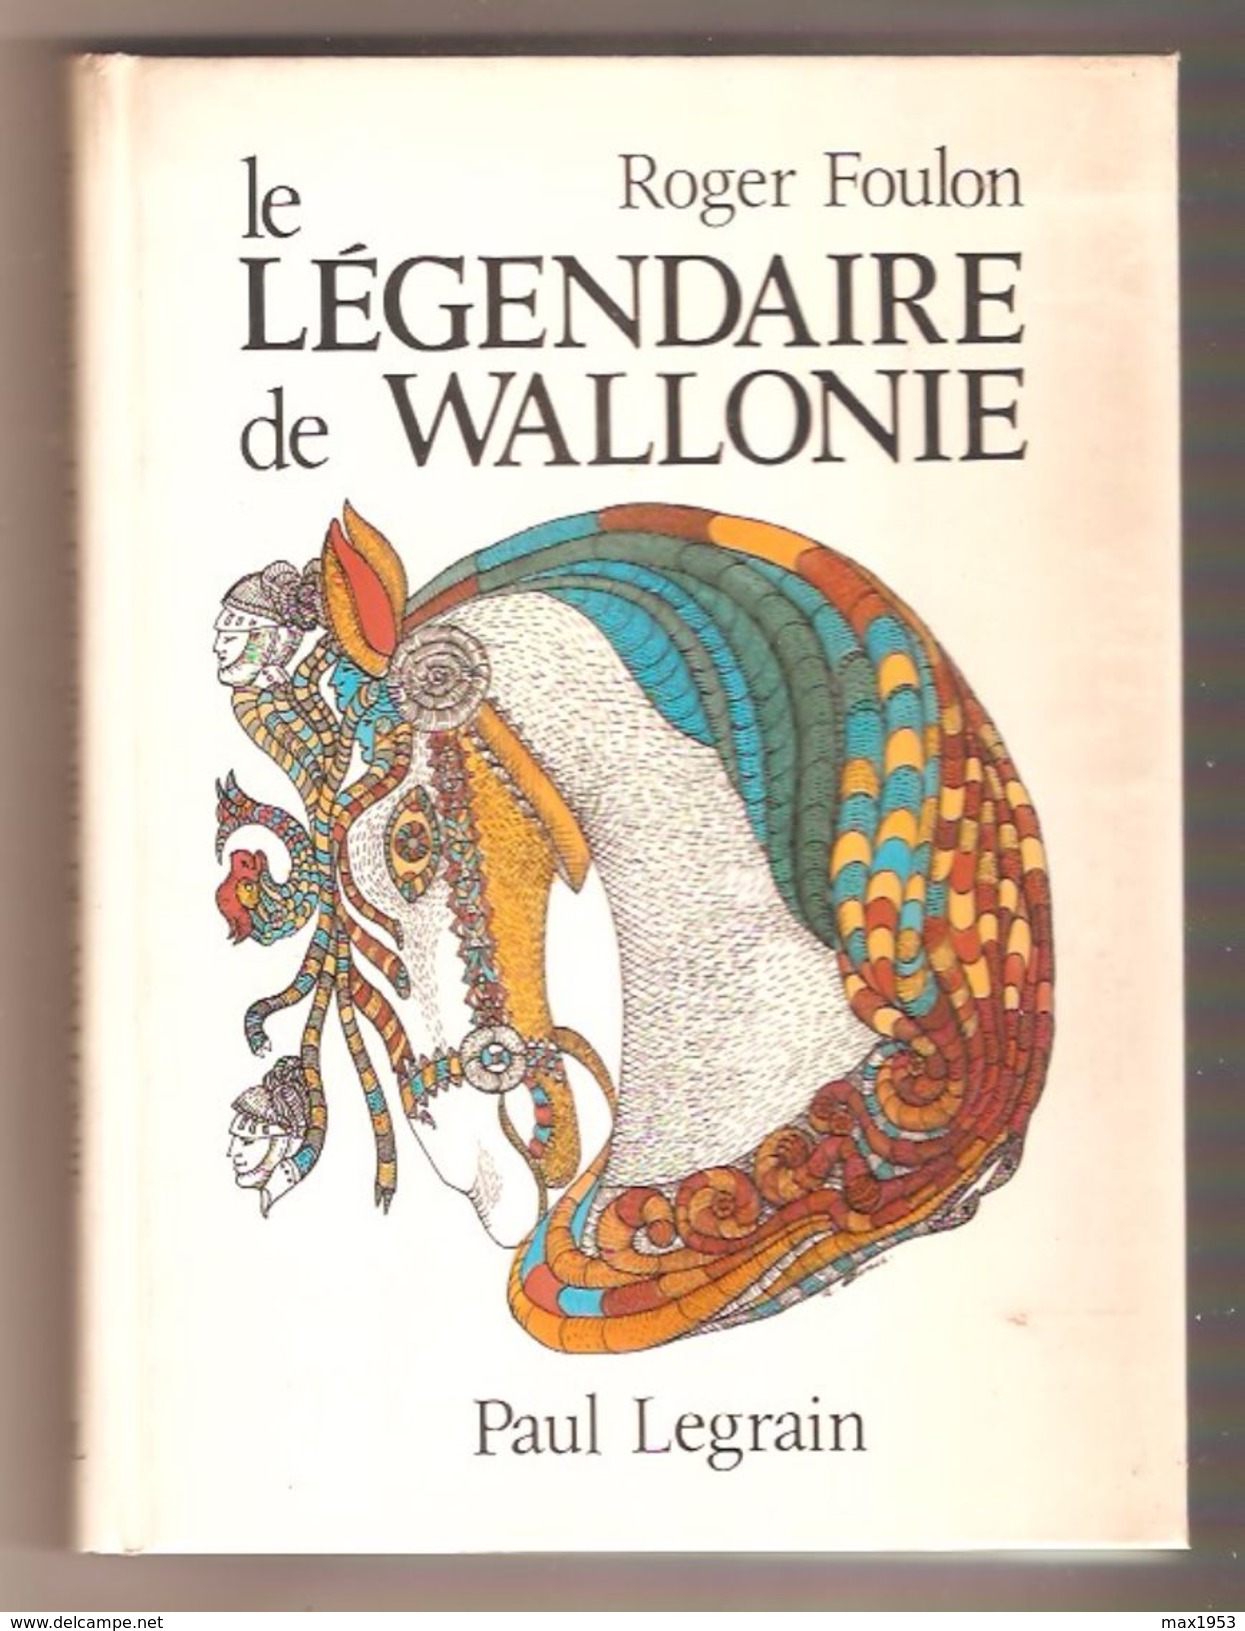 Roger Foulon - LE LEGENDAIRE DE WALLONIE - Paul Legrain, Editeur, 1983 - Belgique